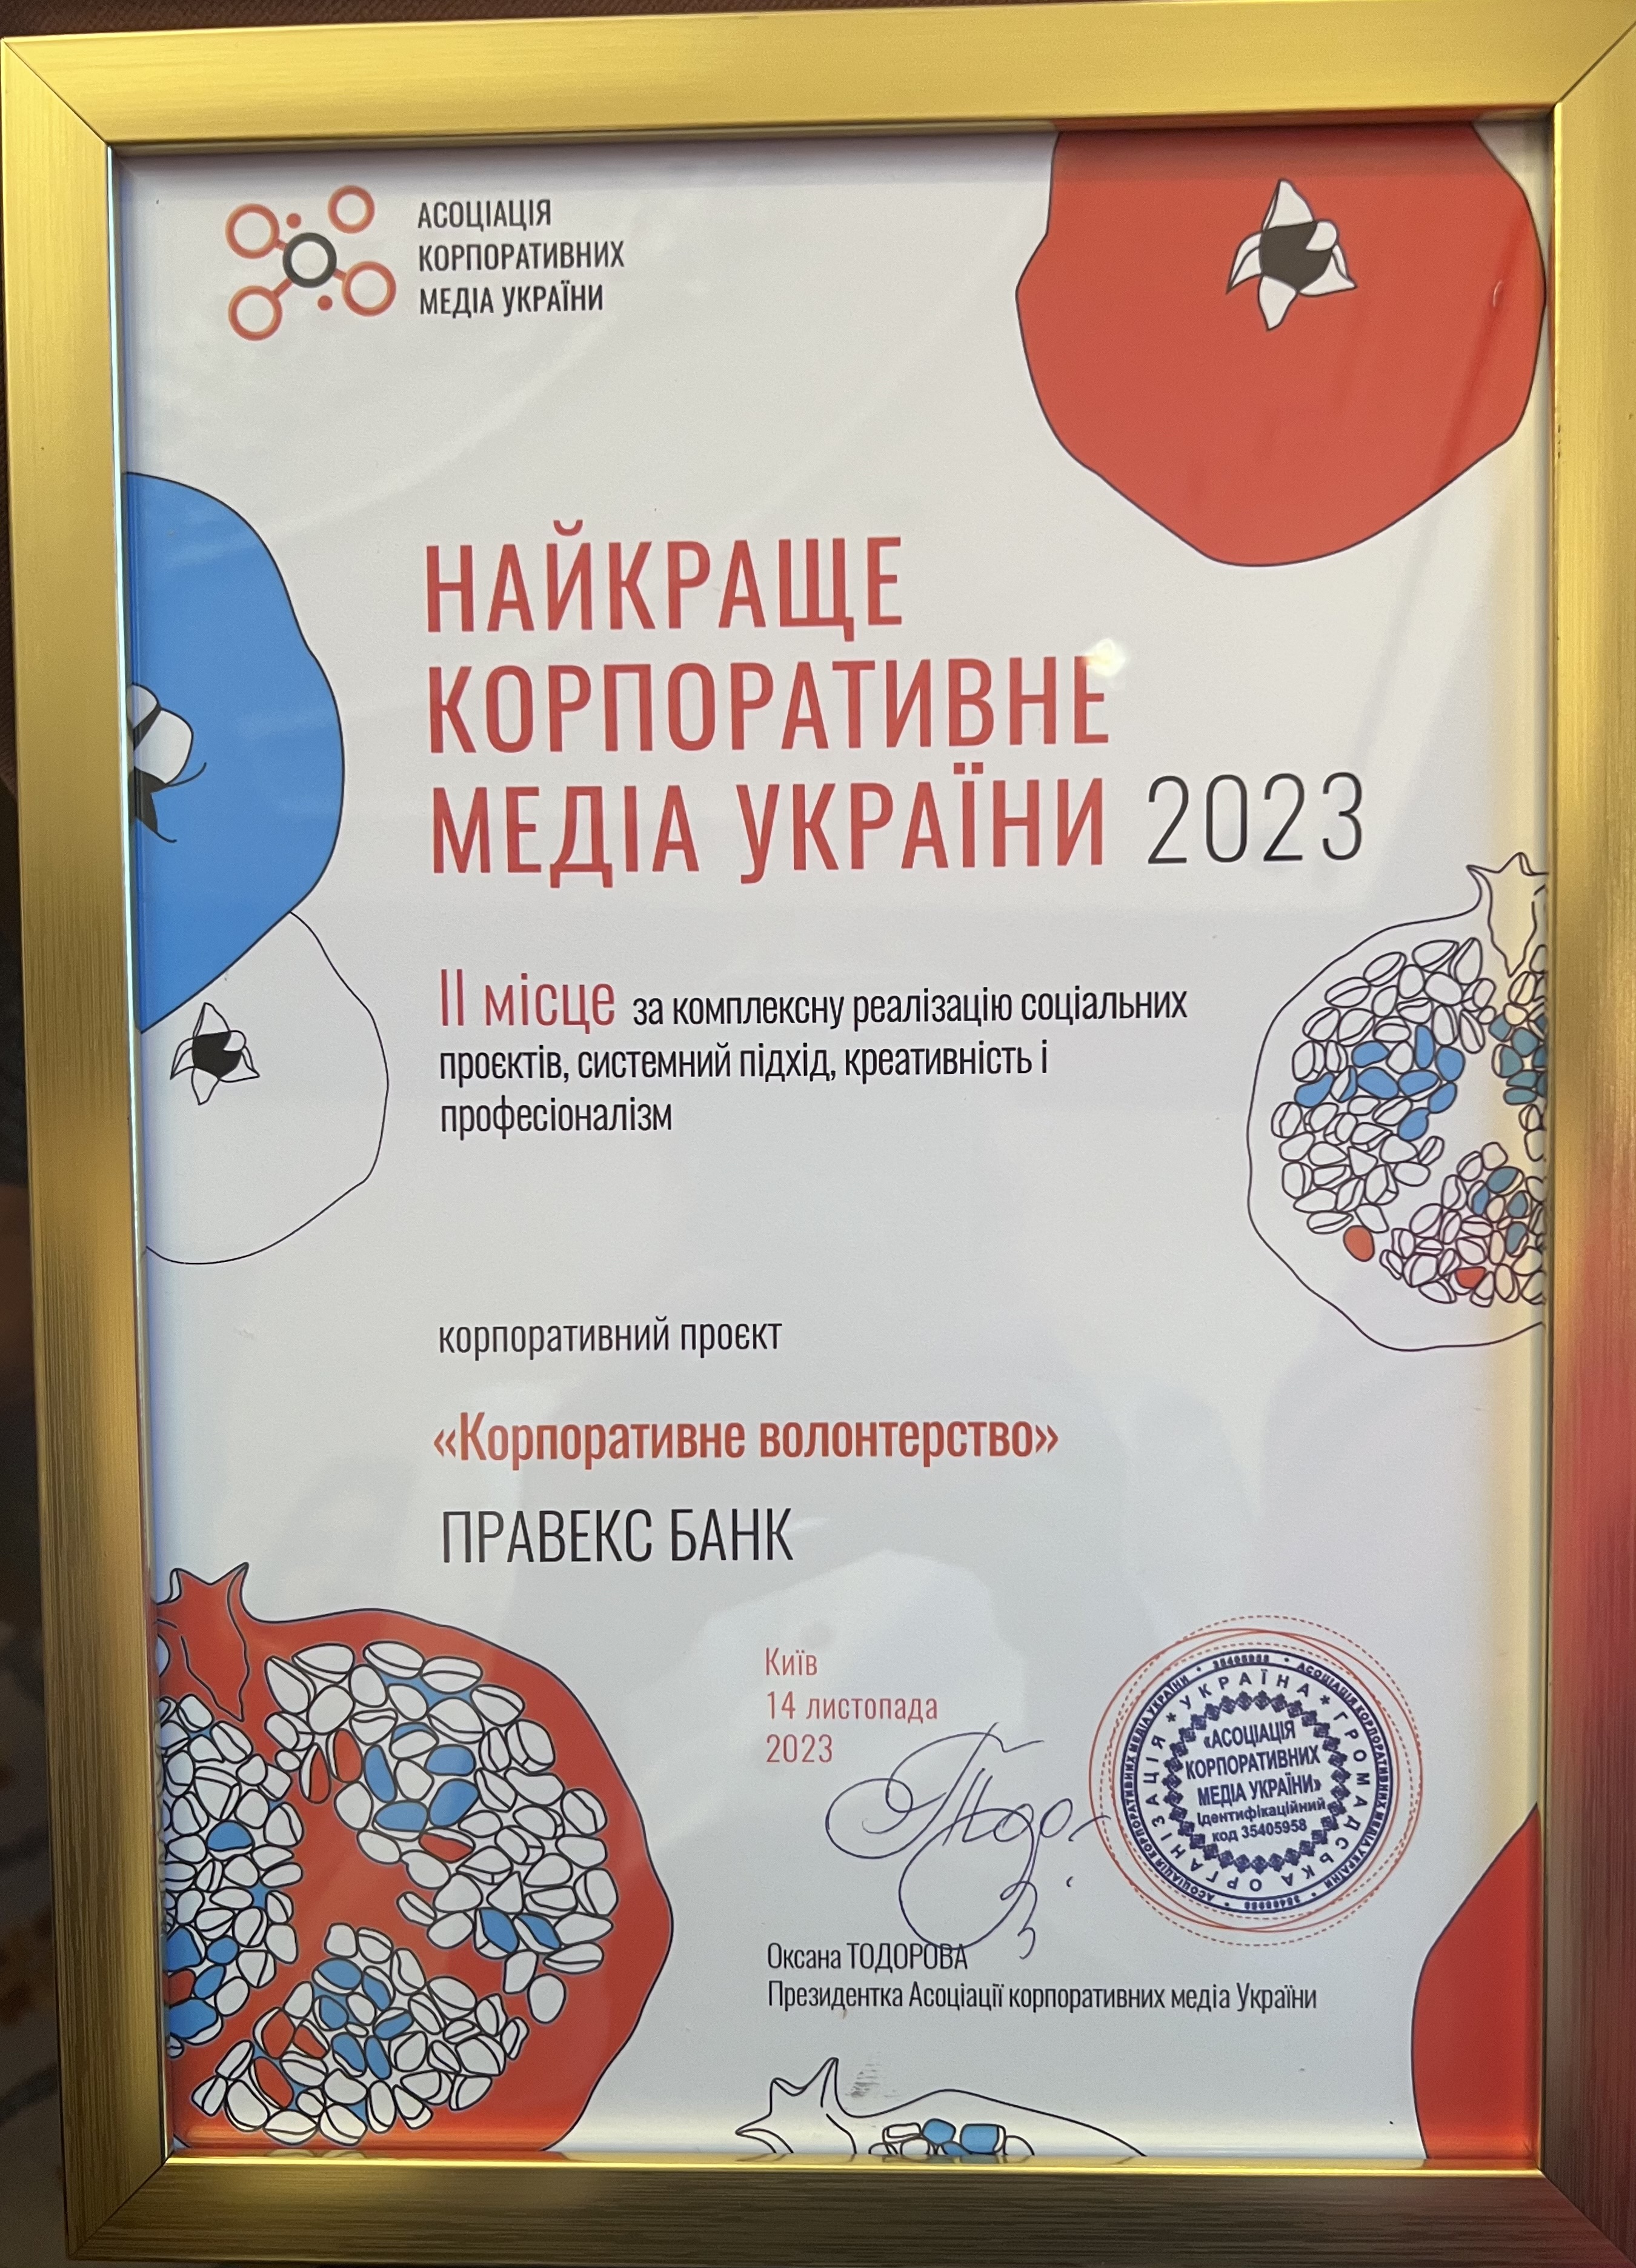 ПРАВЕКС БАНК отримав нагороду на конкурсі «Найкраще корпоративне медіа України 2023»